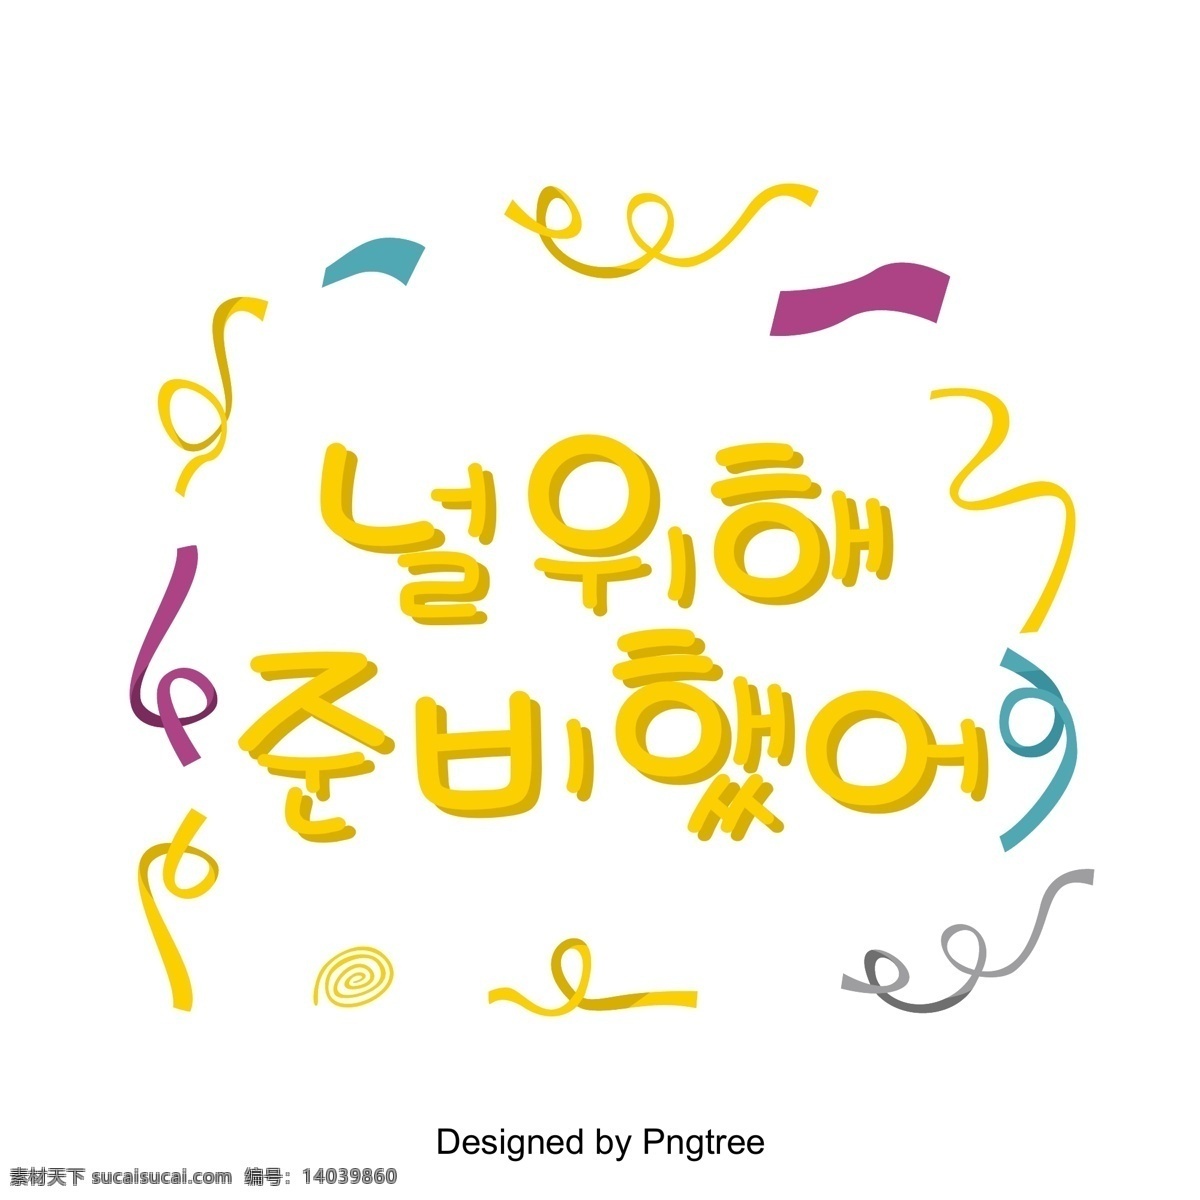 必须 改变 韩国 场景 中黄 色丝 带 颜色 这个给你 黄色 七彩色丝带 帧 立体 韩文 现场 事件 节日庆典 字形 韩国风格